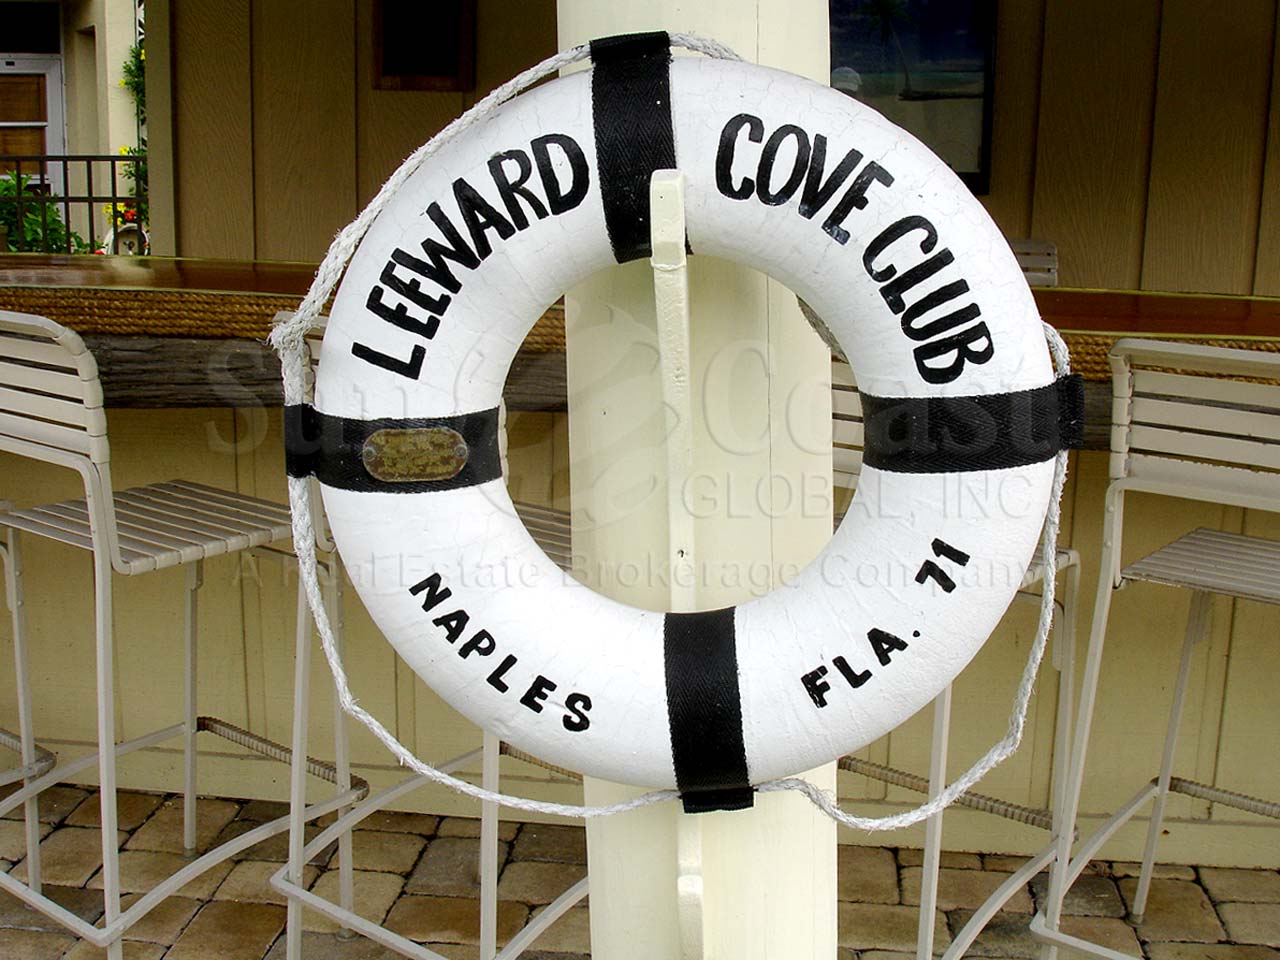 Leeward Cove Community Pool